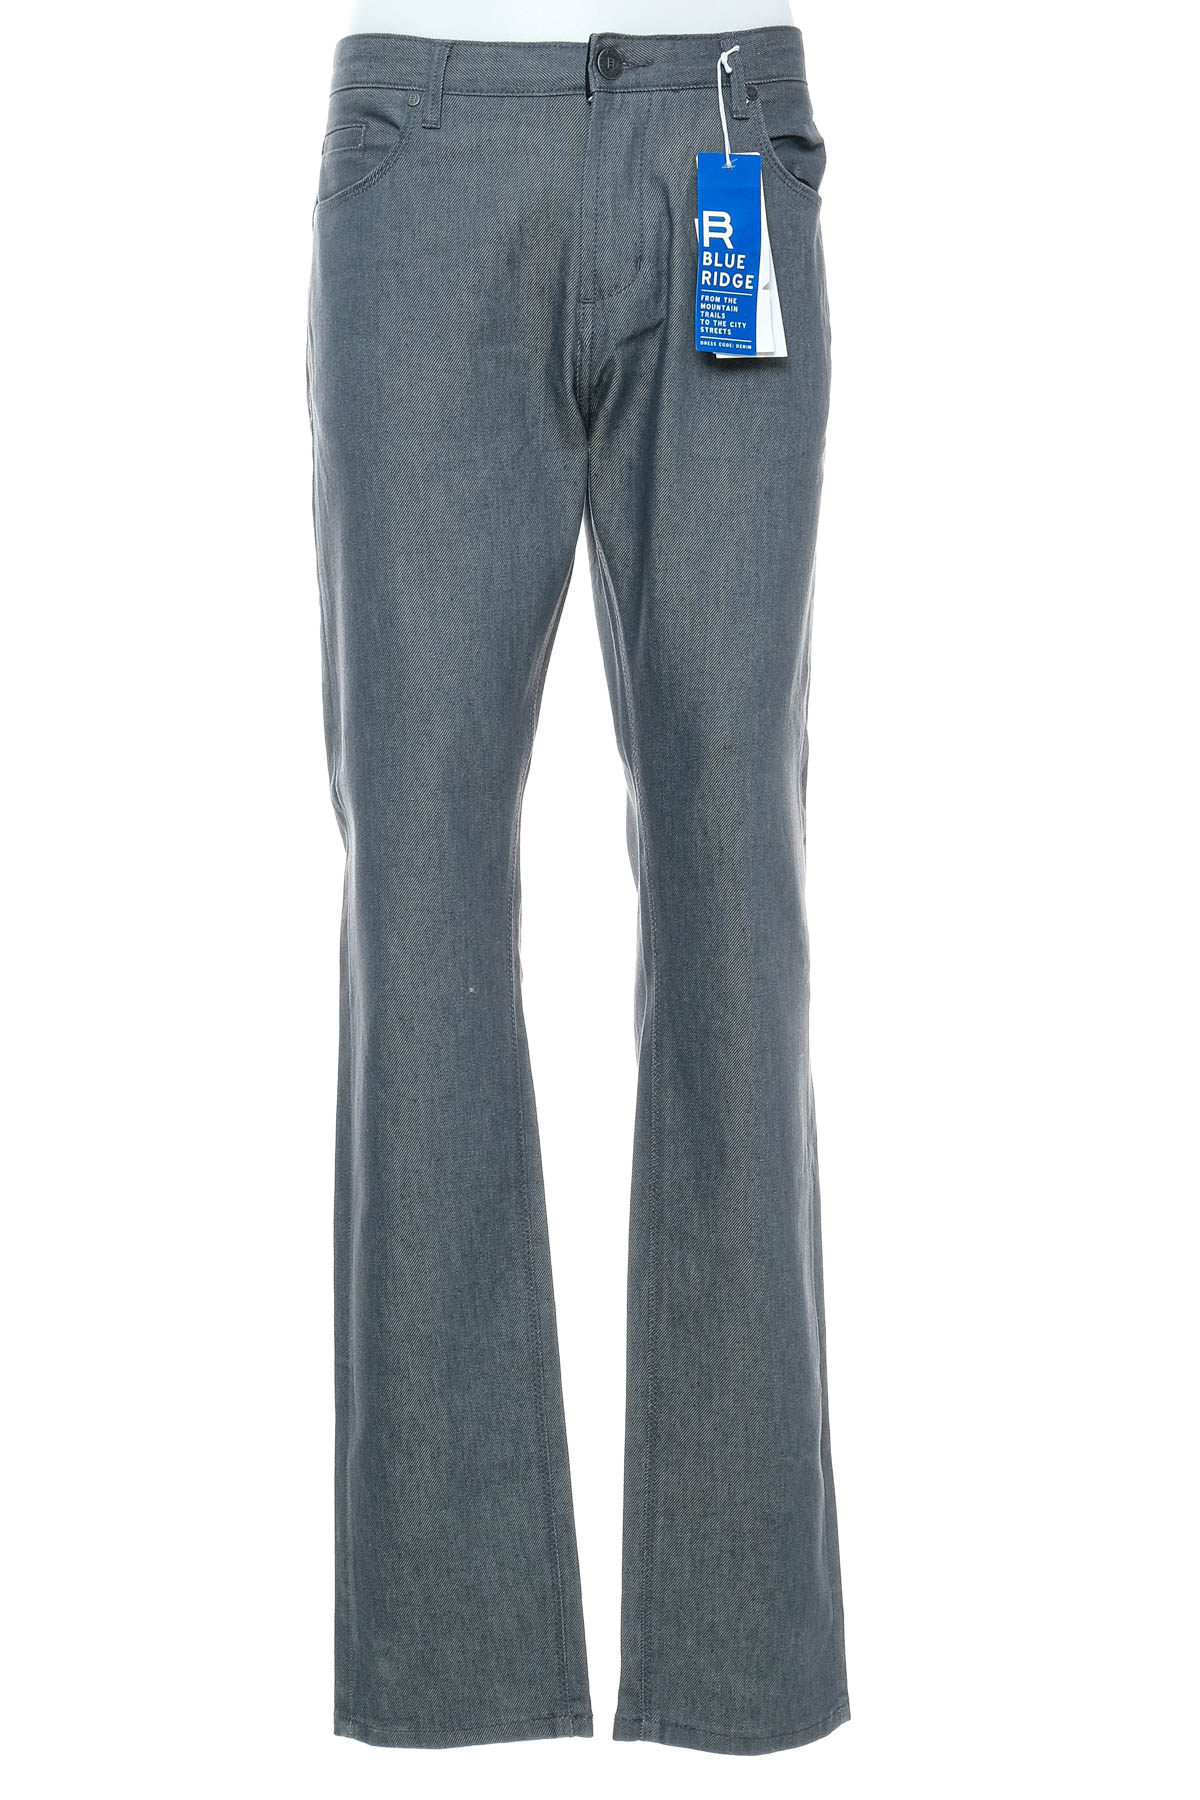 Pantalon pentru bărbați - Blue Ridge - 0